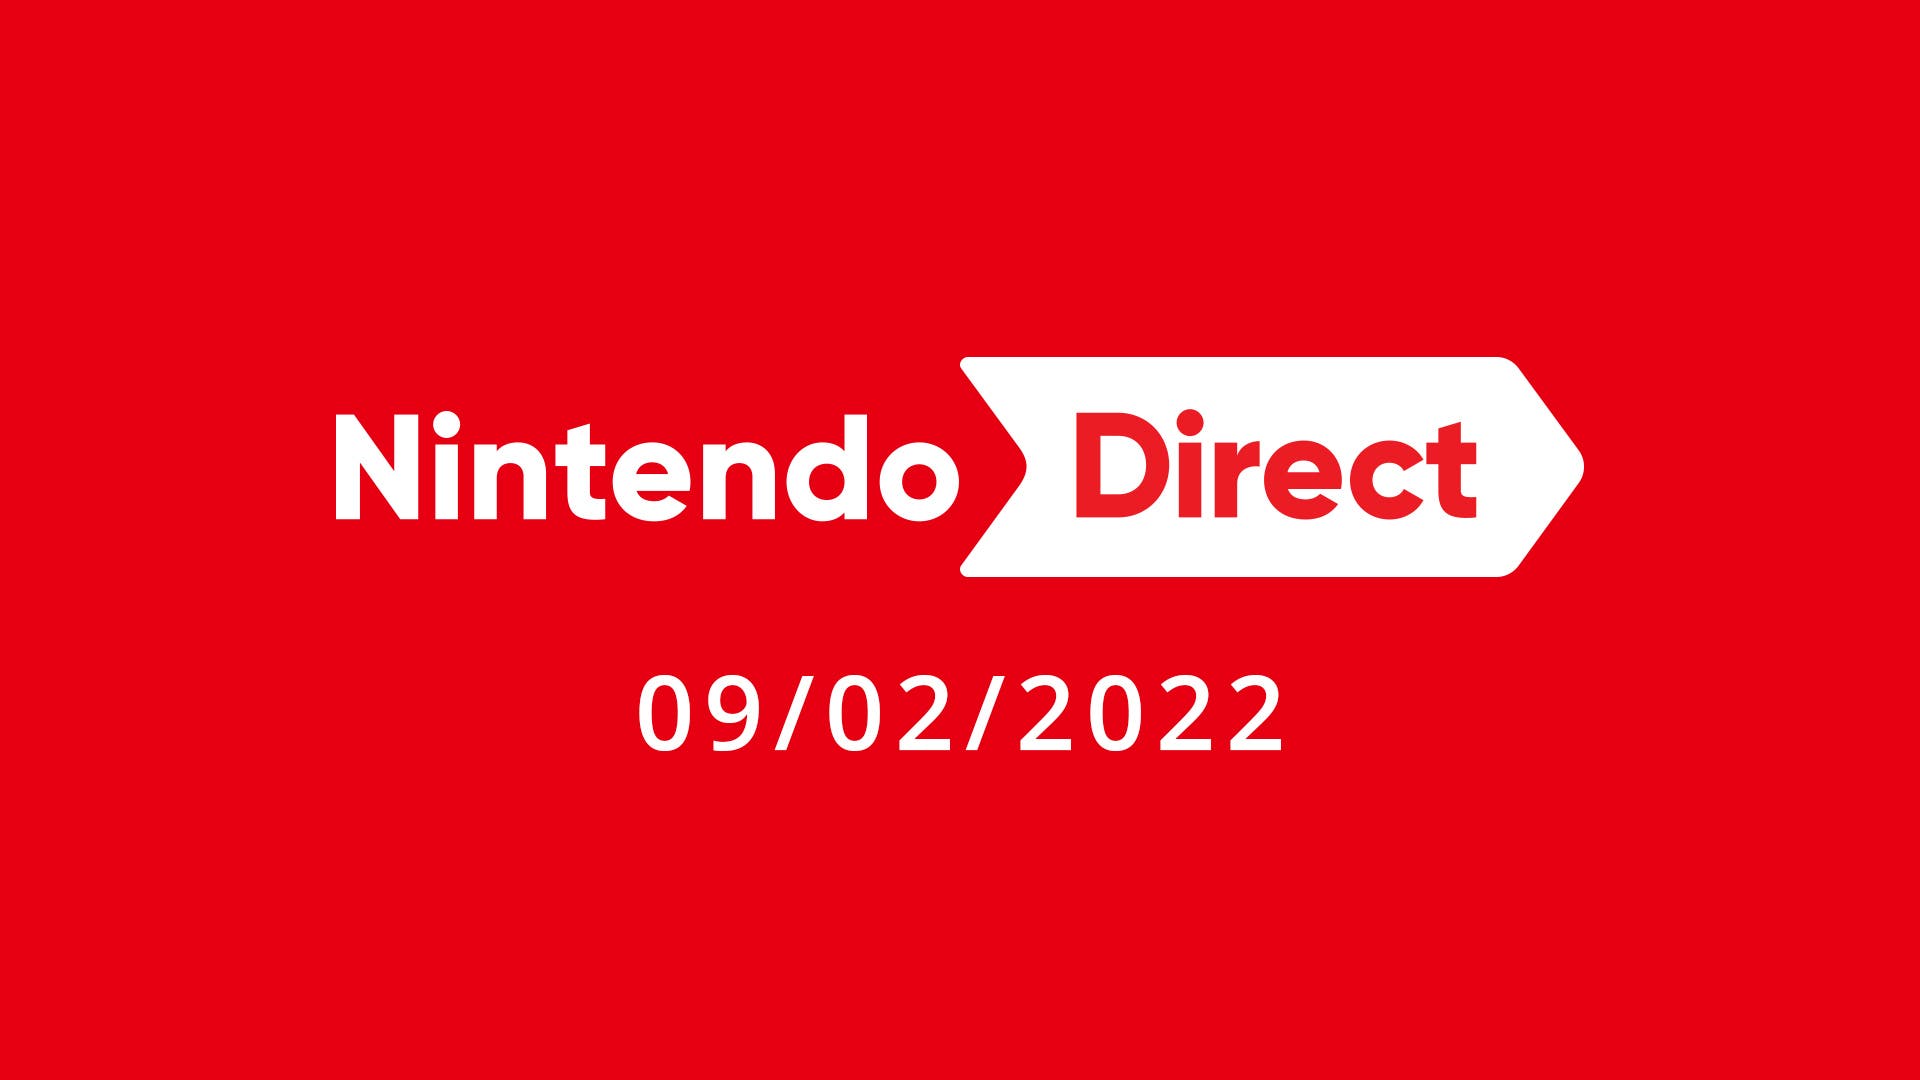 Top de los tráilers del último Nintendo Direct más vistos en YouTube